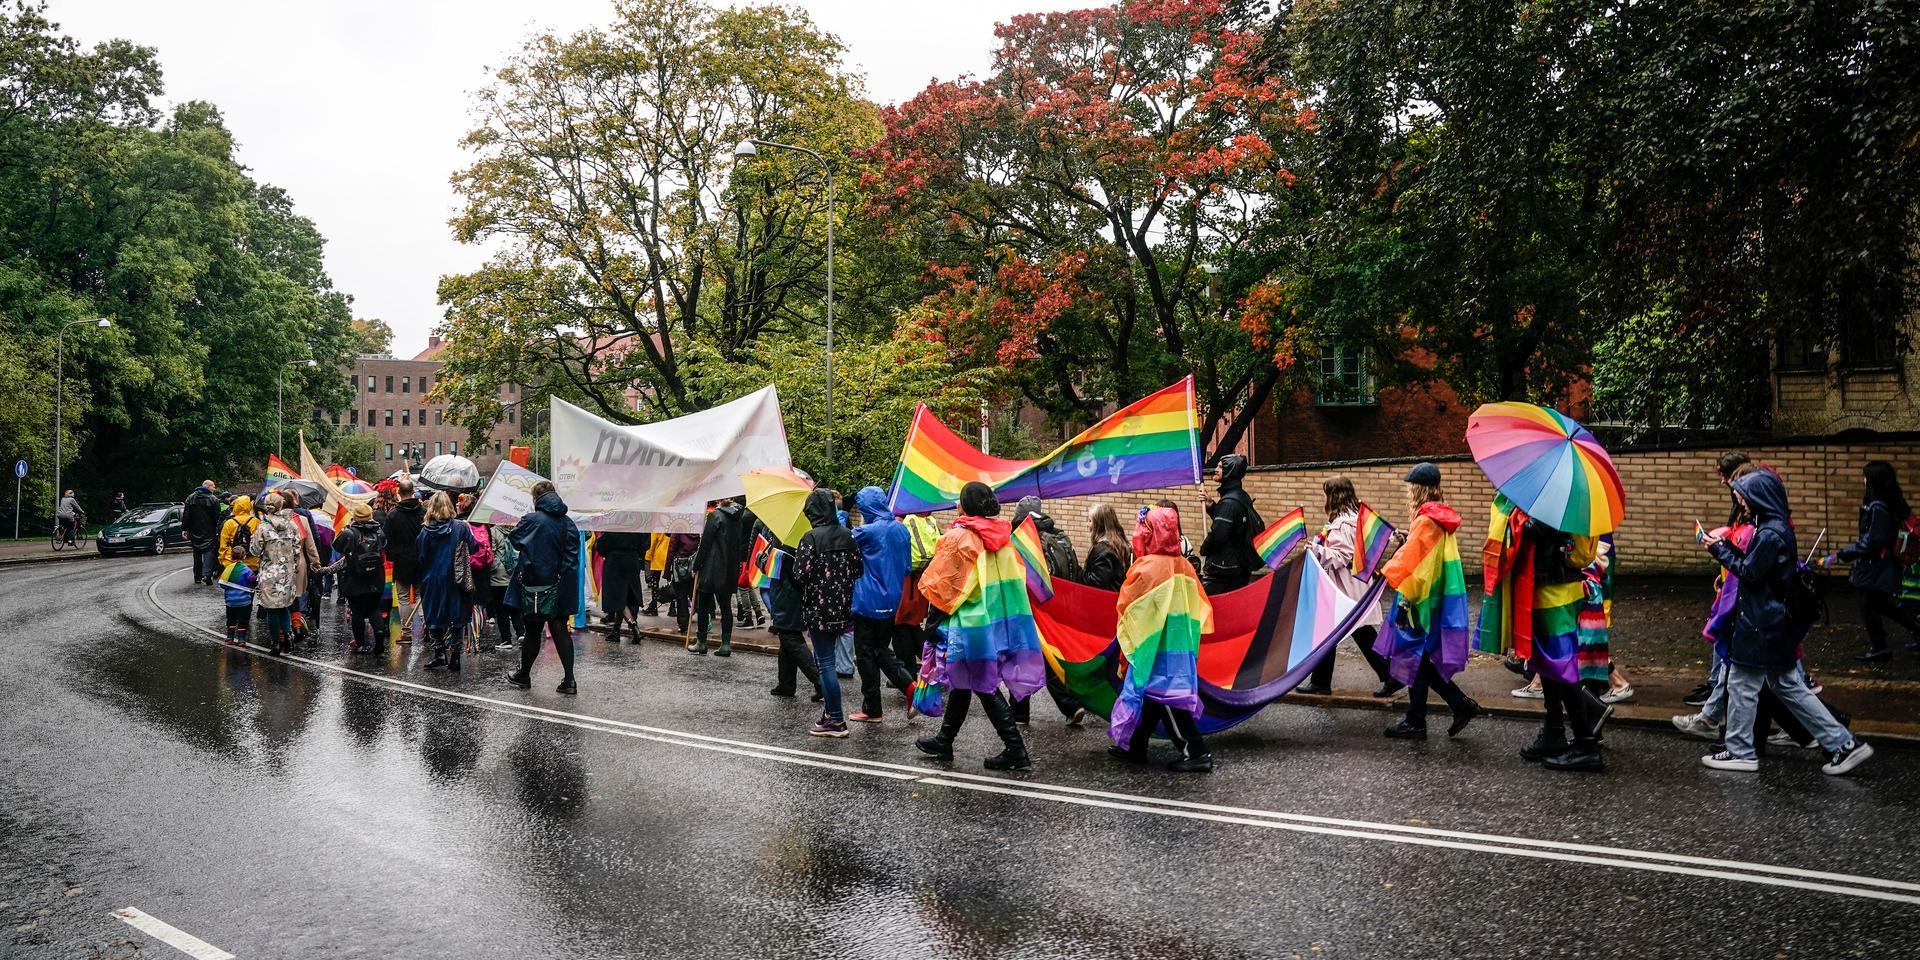 Prideparad under West Pride 2021. En liberal demokrati respekterar mänskliga rättigheter, menar Centerpartiet.